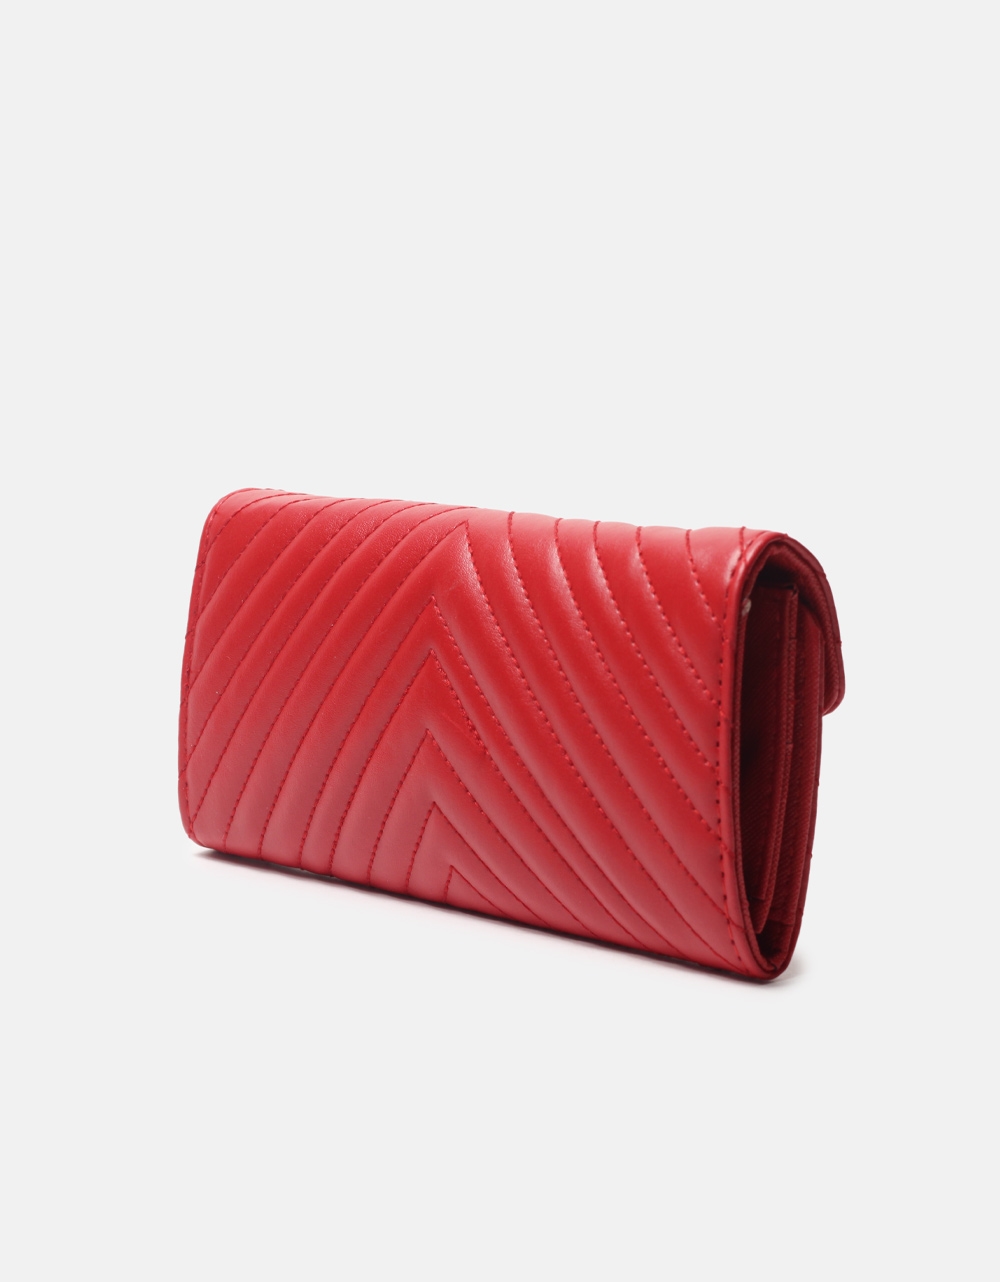 Εικόνα από Μονόχρωμο πορτοφόλι με διακοσμητικές ραφές Κόκκινο